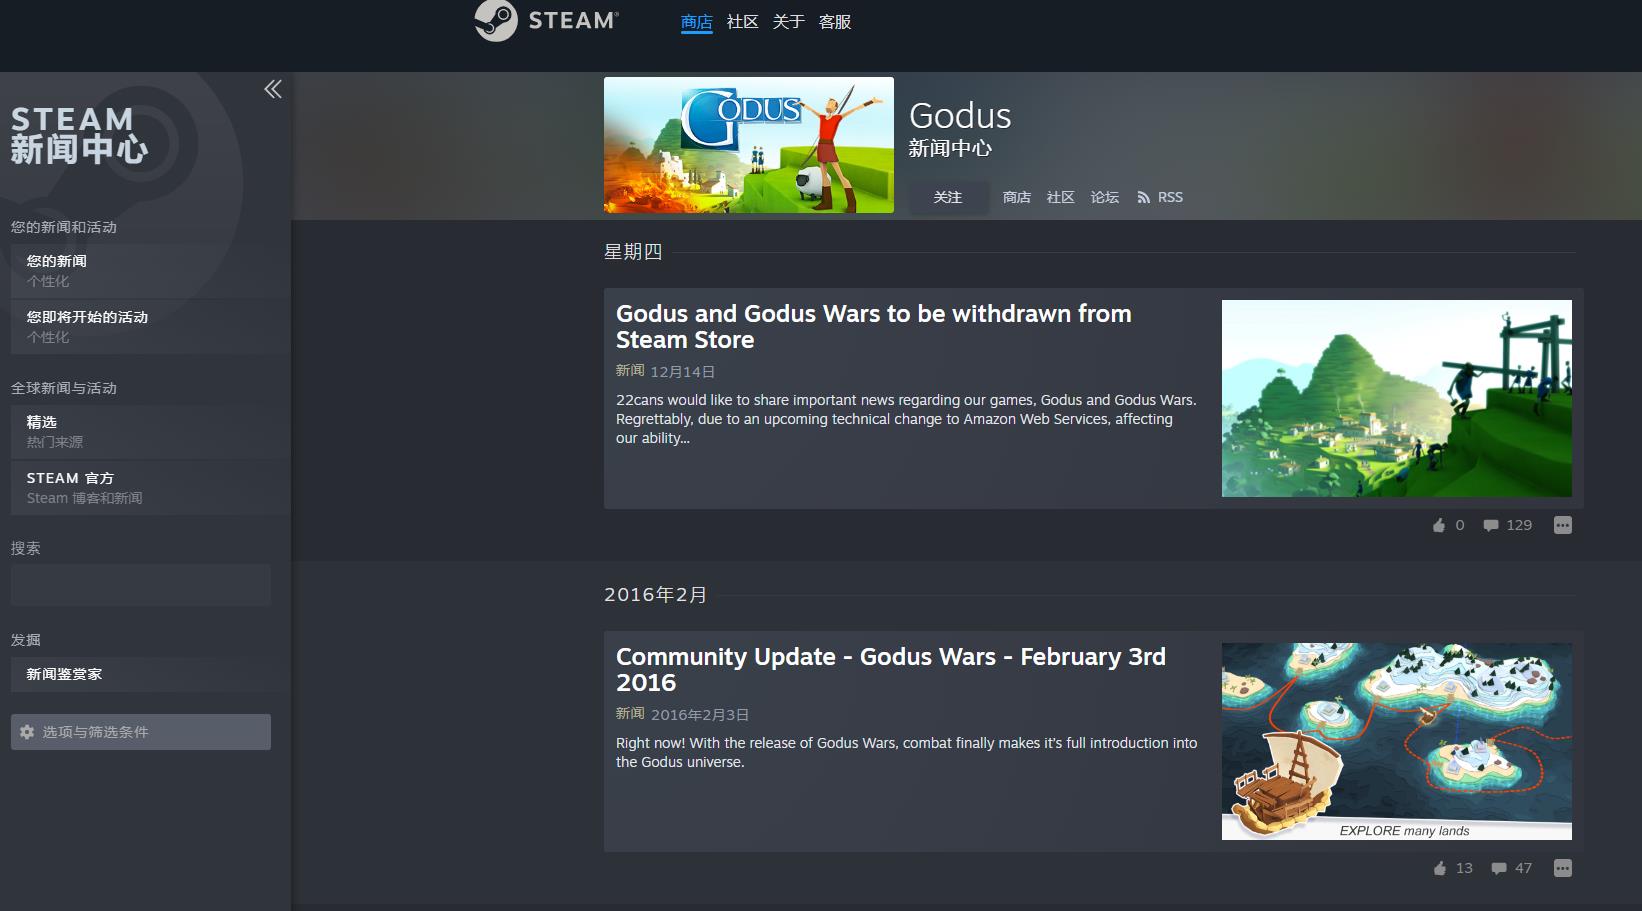 上帝扮演游戏《Godus》和《Godus Wars》确认从Steam下架